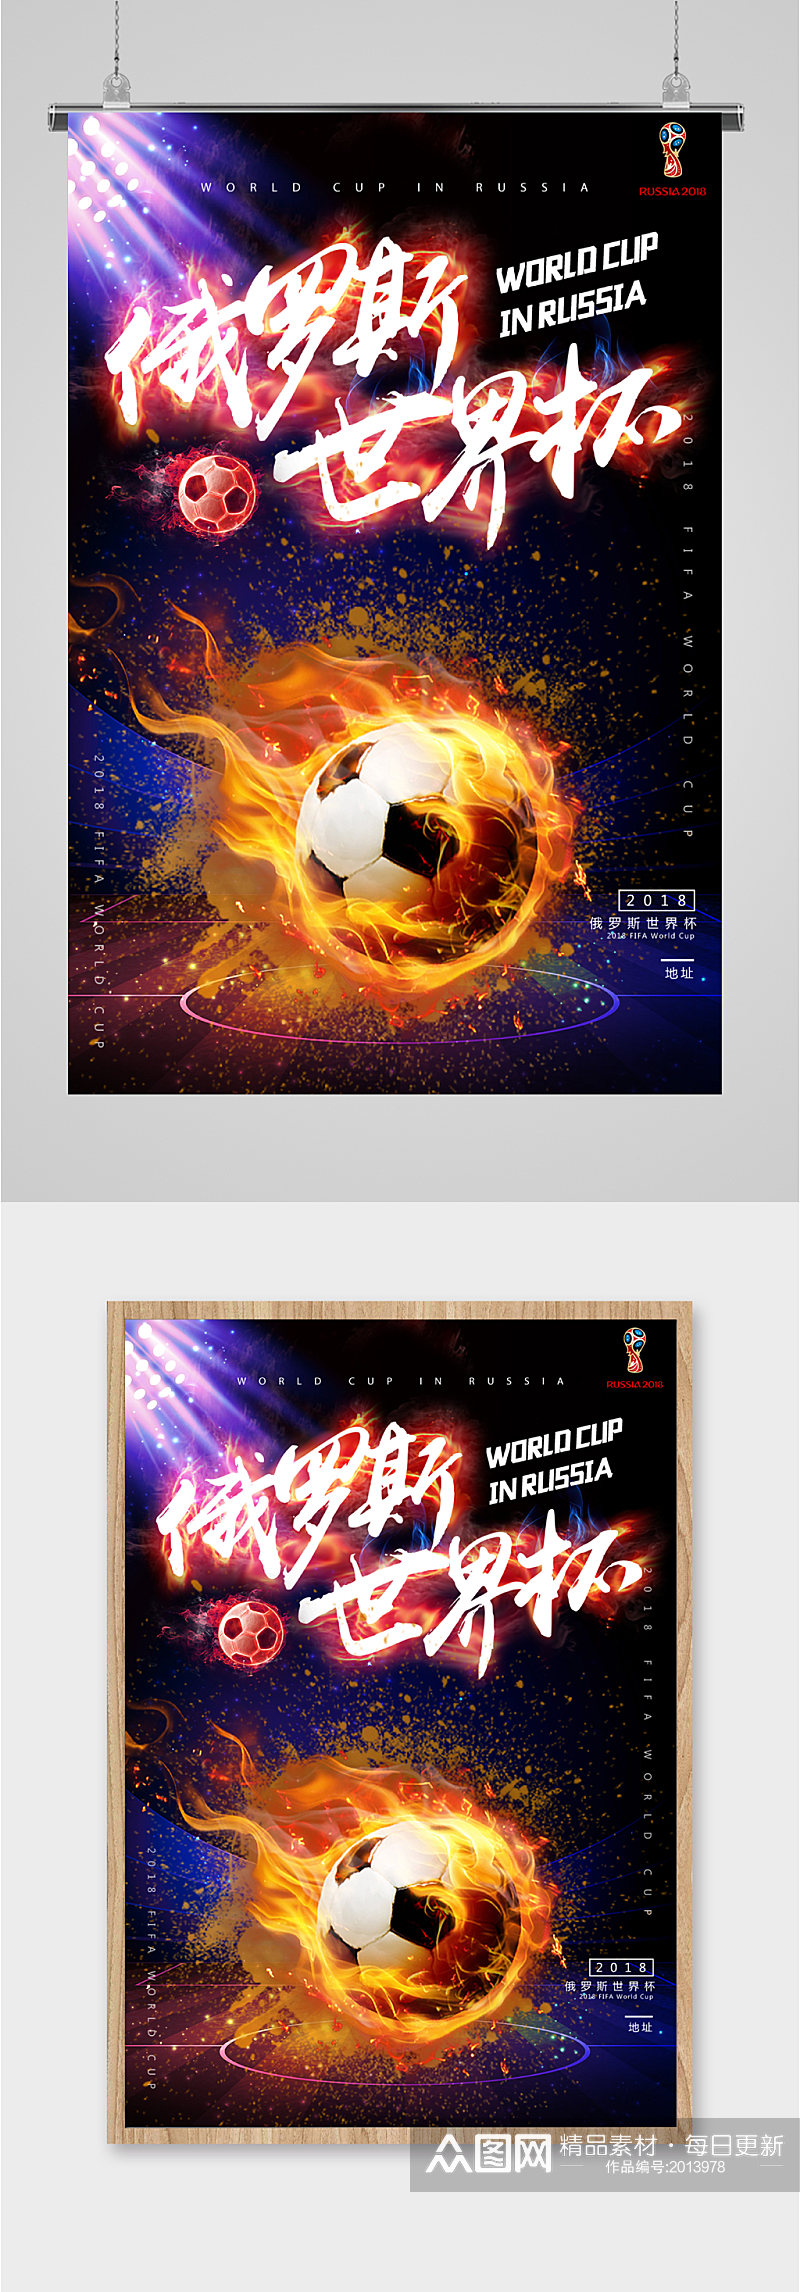 俄罗斯世界杯宣传海报素材